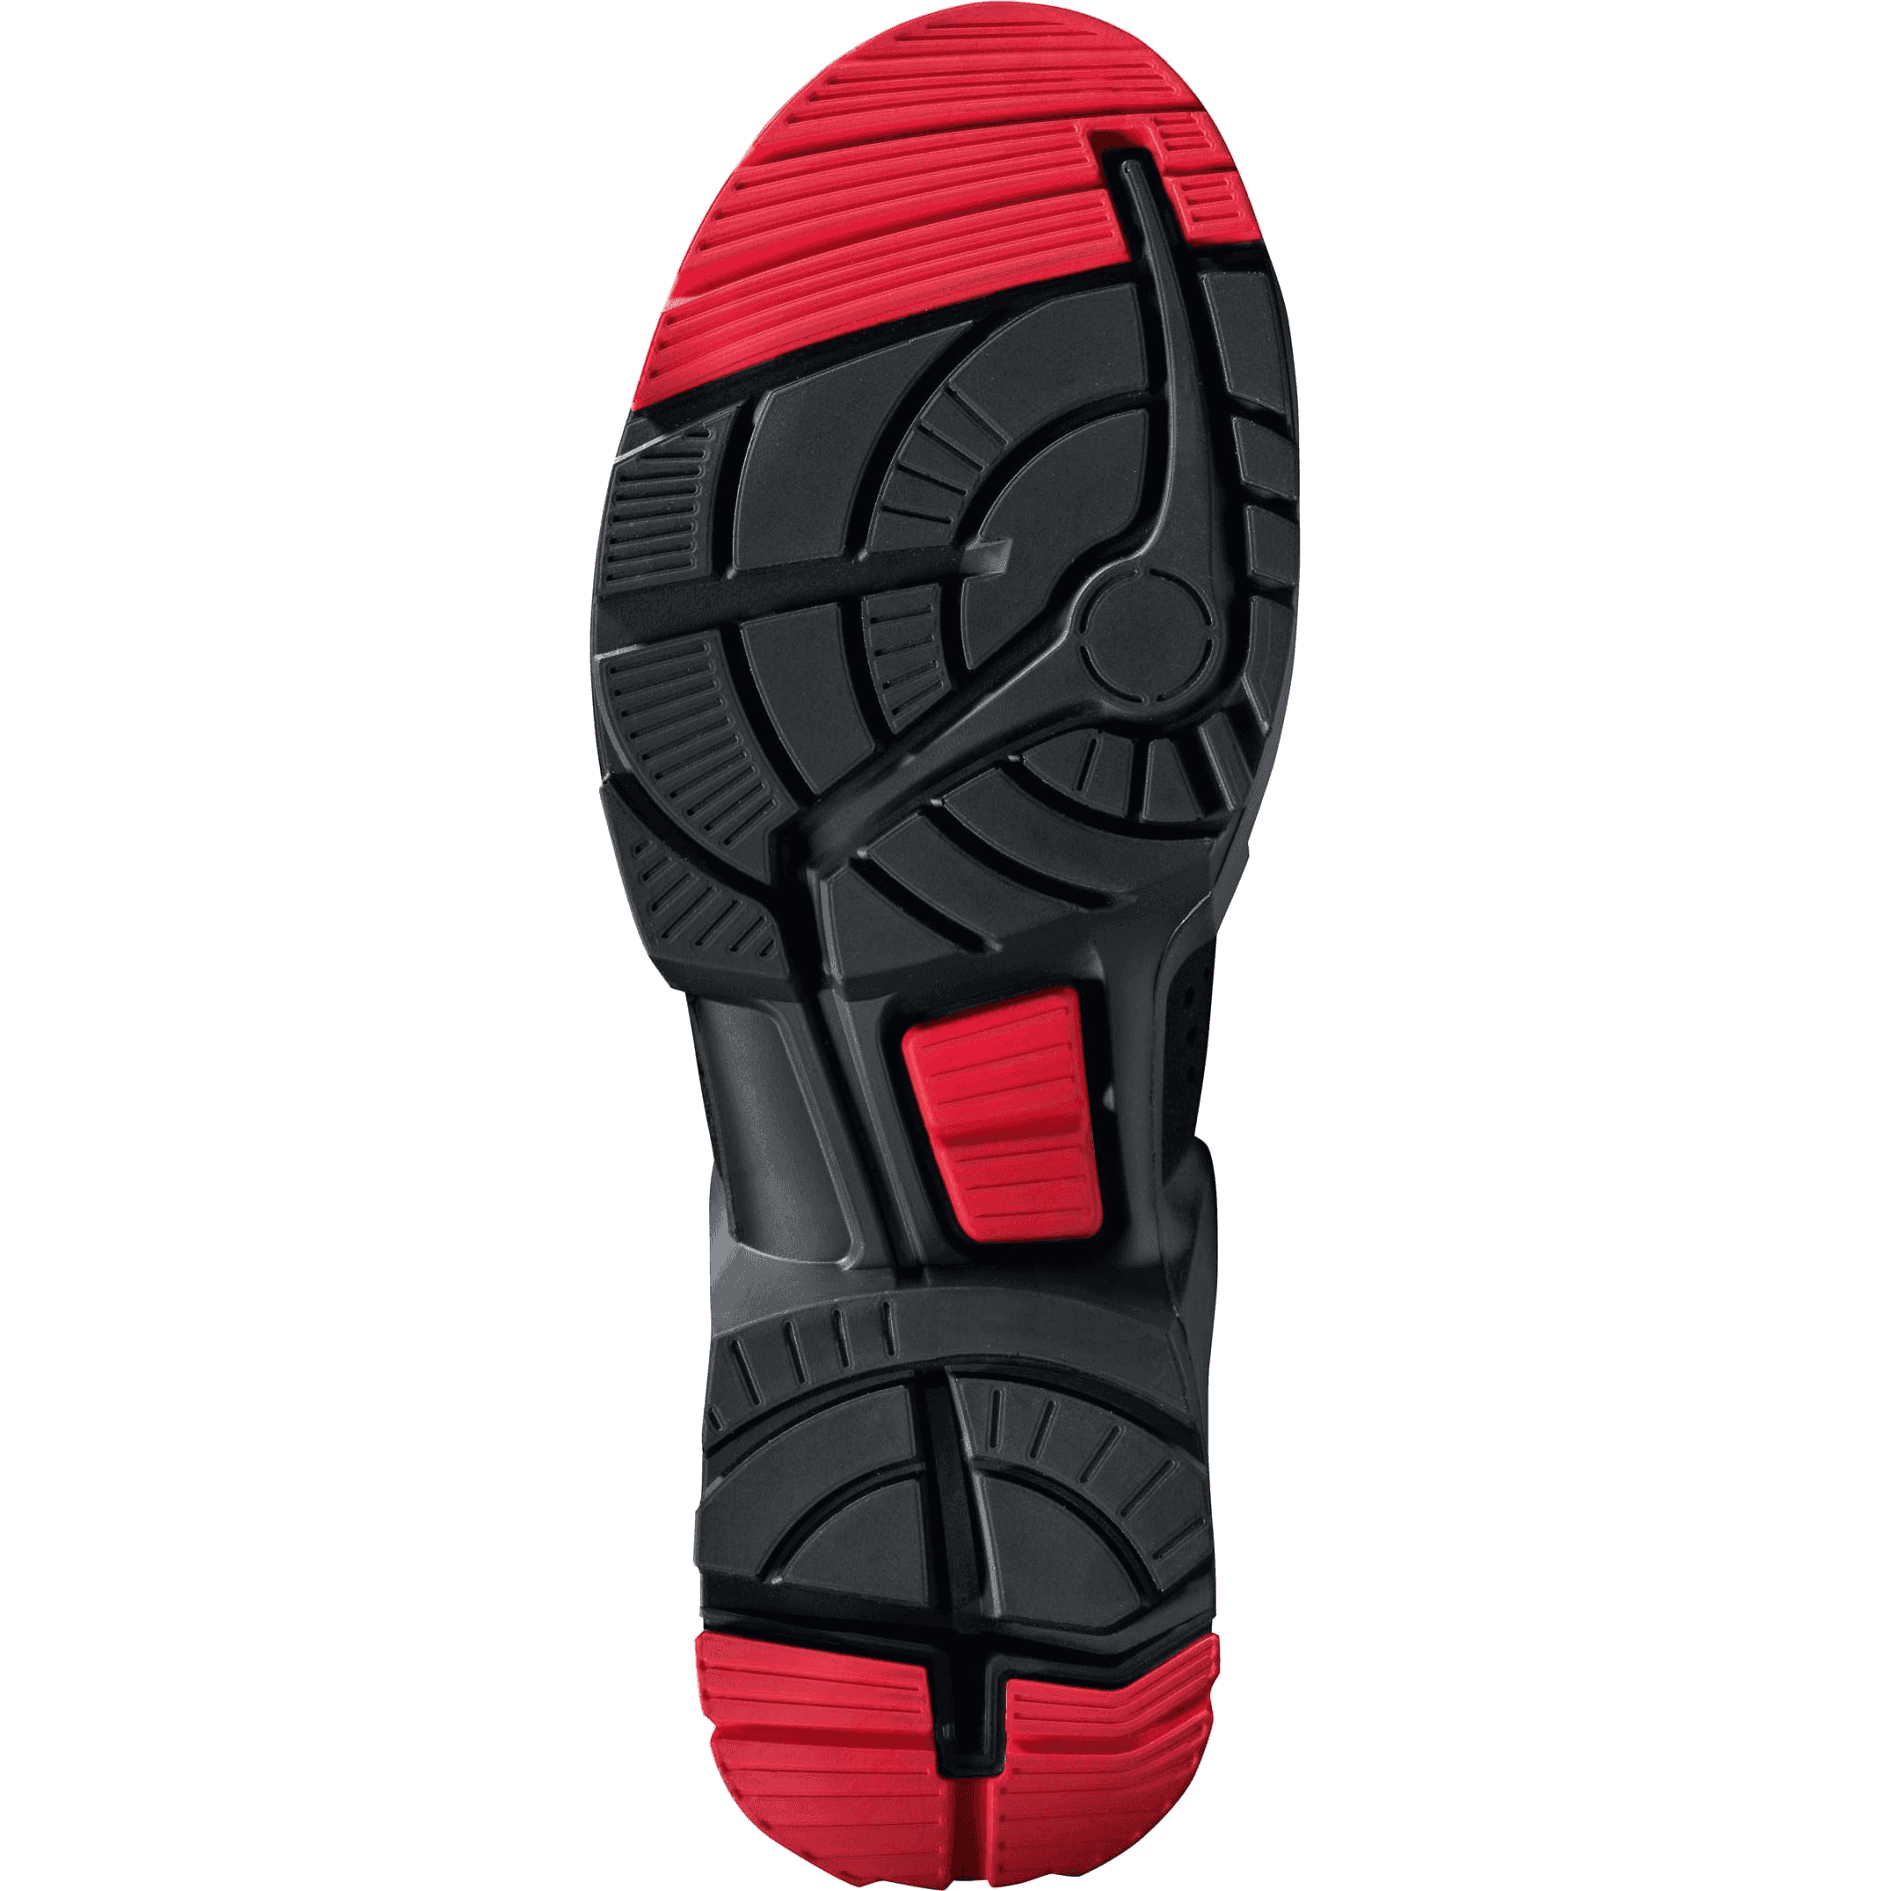 Zapatos de seguridad Uvex 1 ESD S3 X-Tended